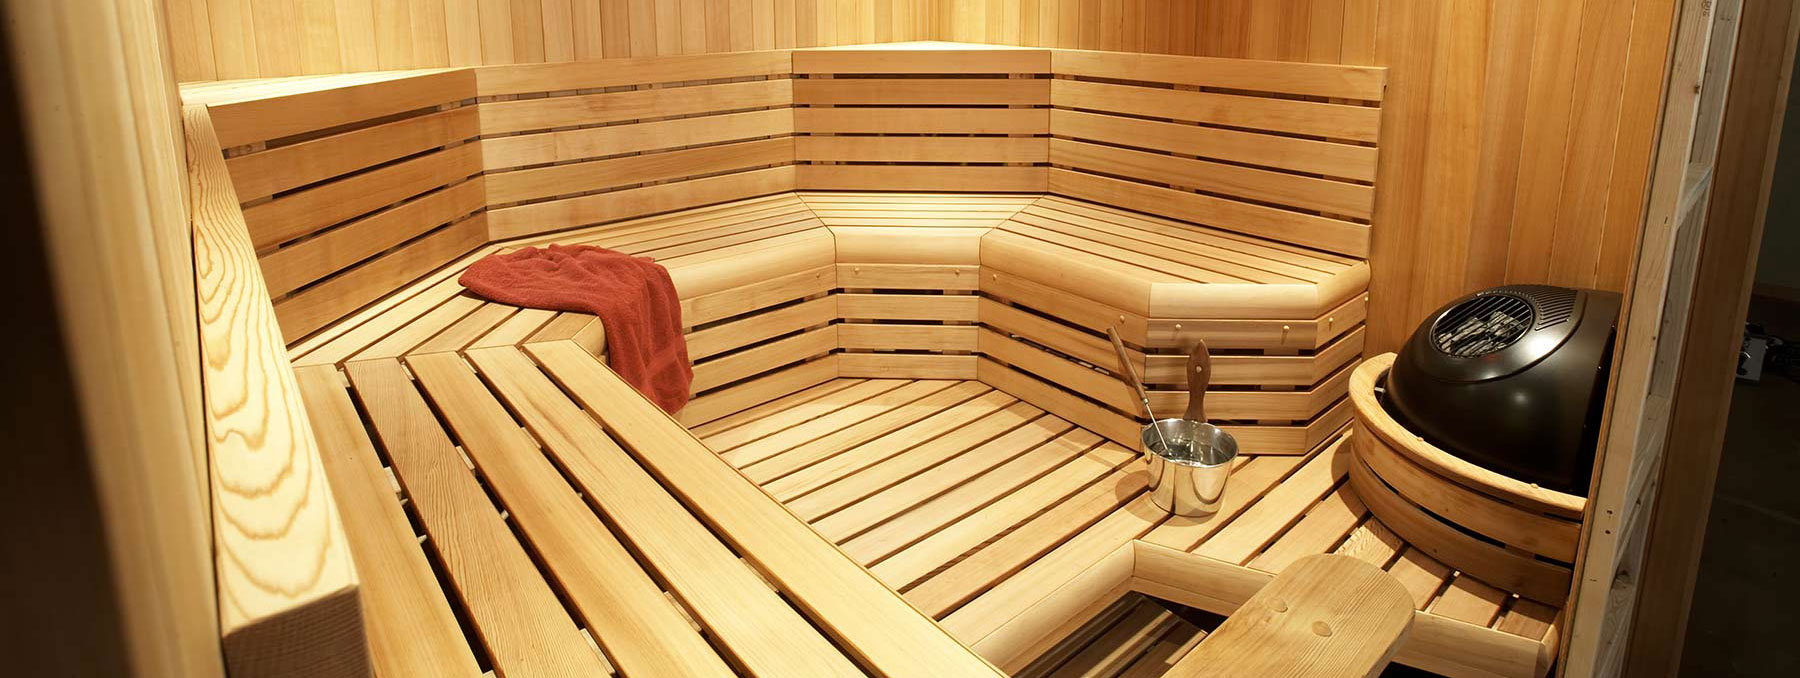 FAQ: Maintaining Your Sauna